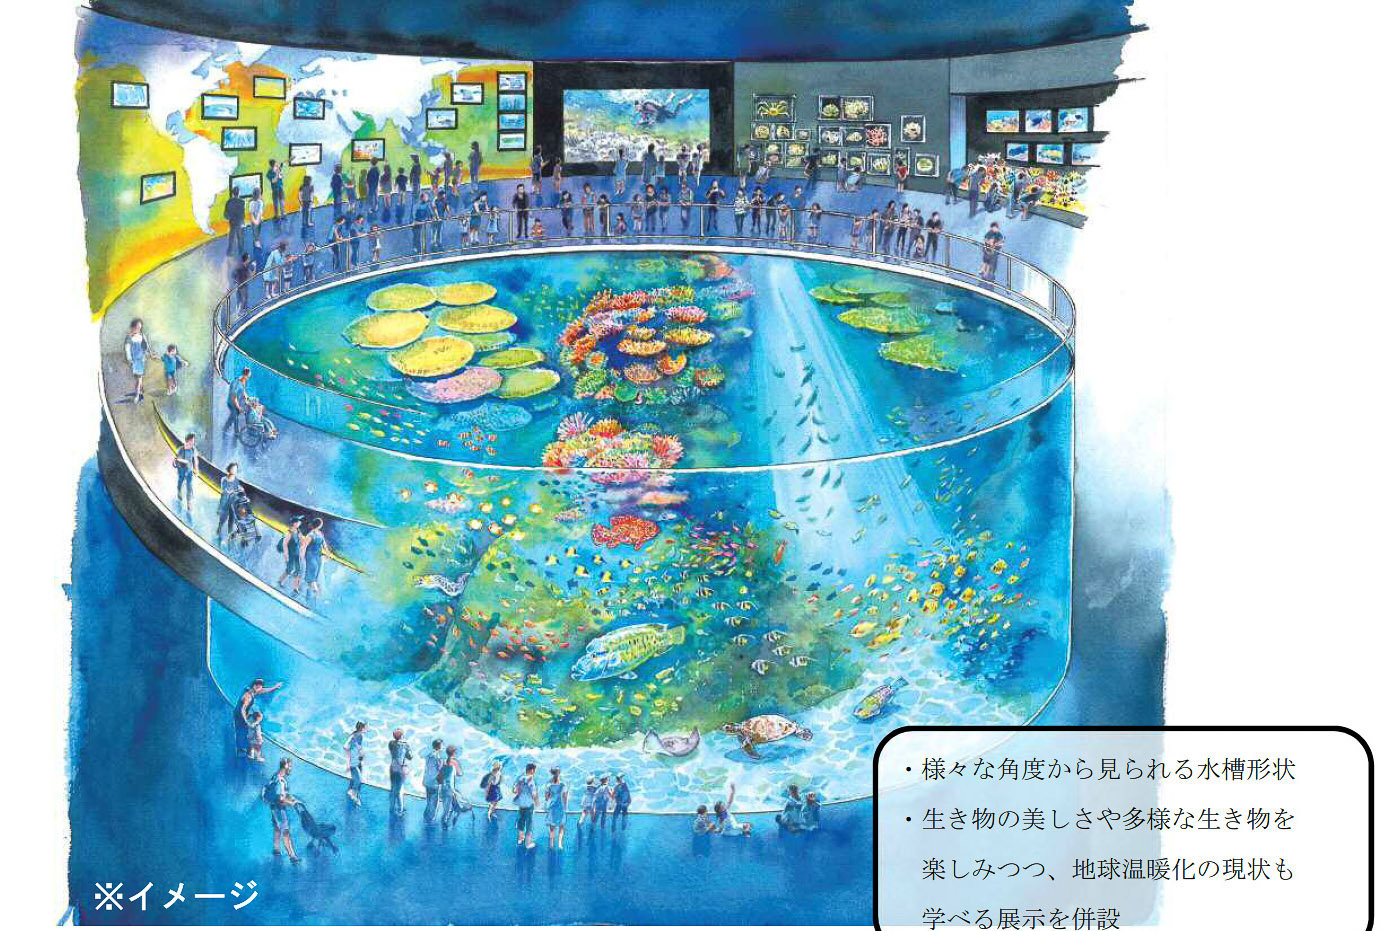 東京都 葛西臨海水族館の建て替え計画公表 海への理解深める施設 として26年度開園目指す パブコメ募集 トラベル Watch